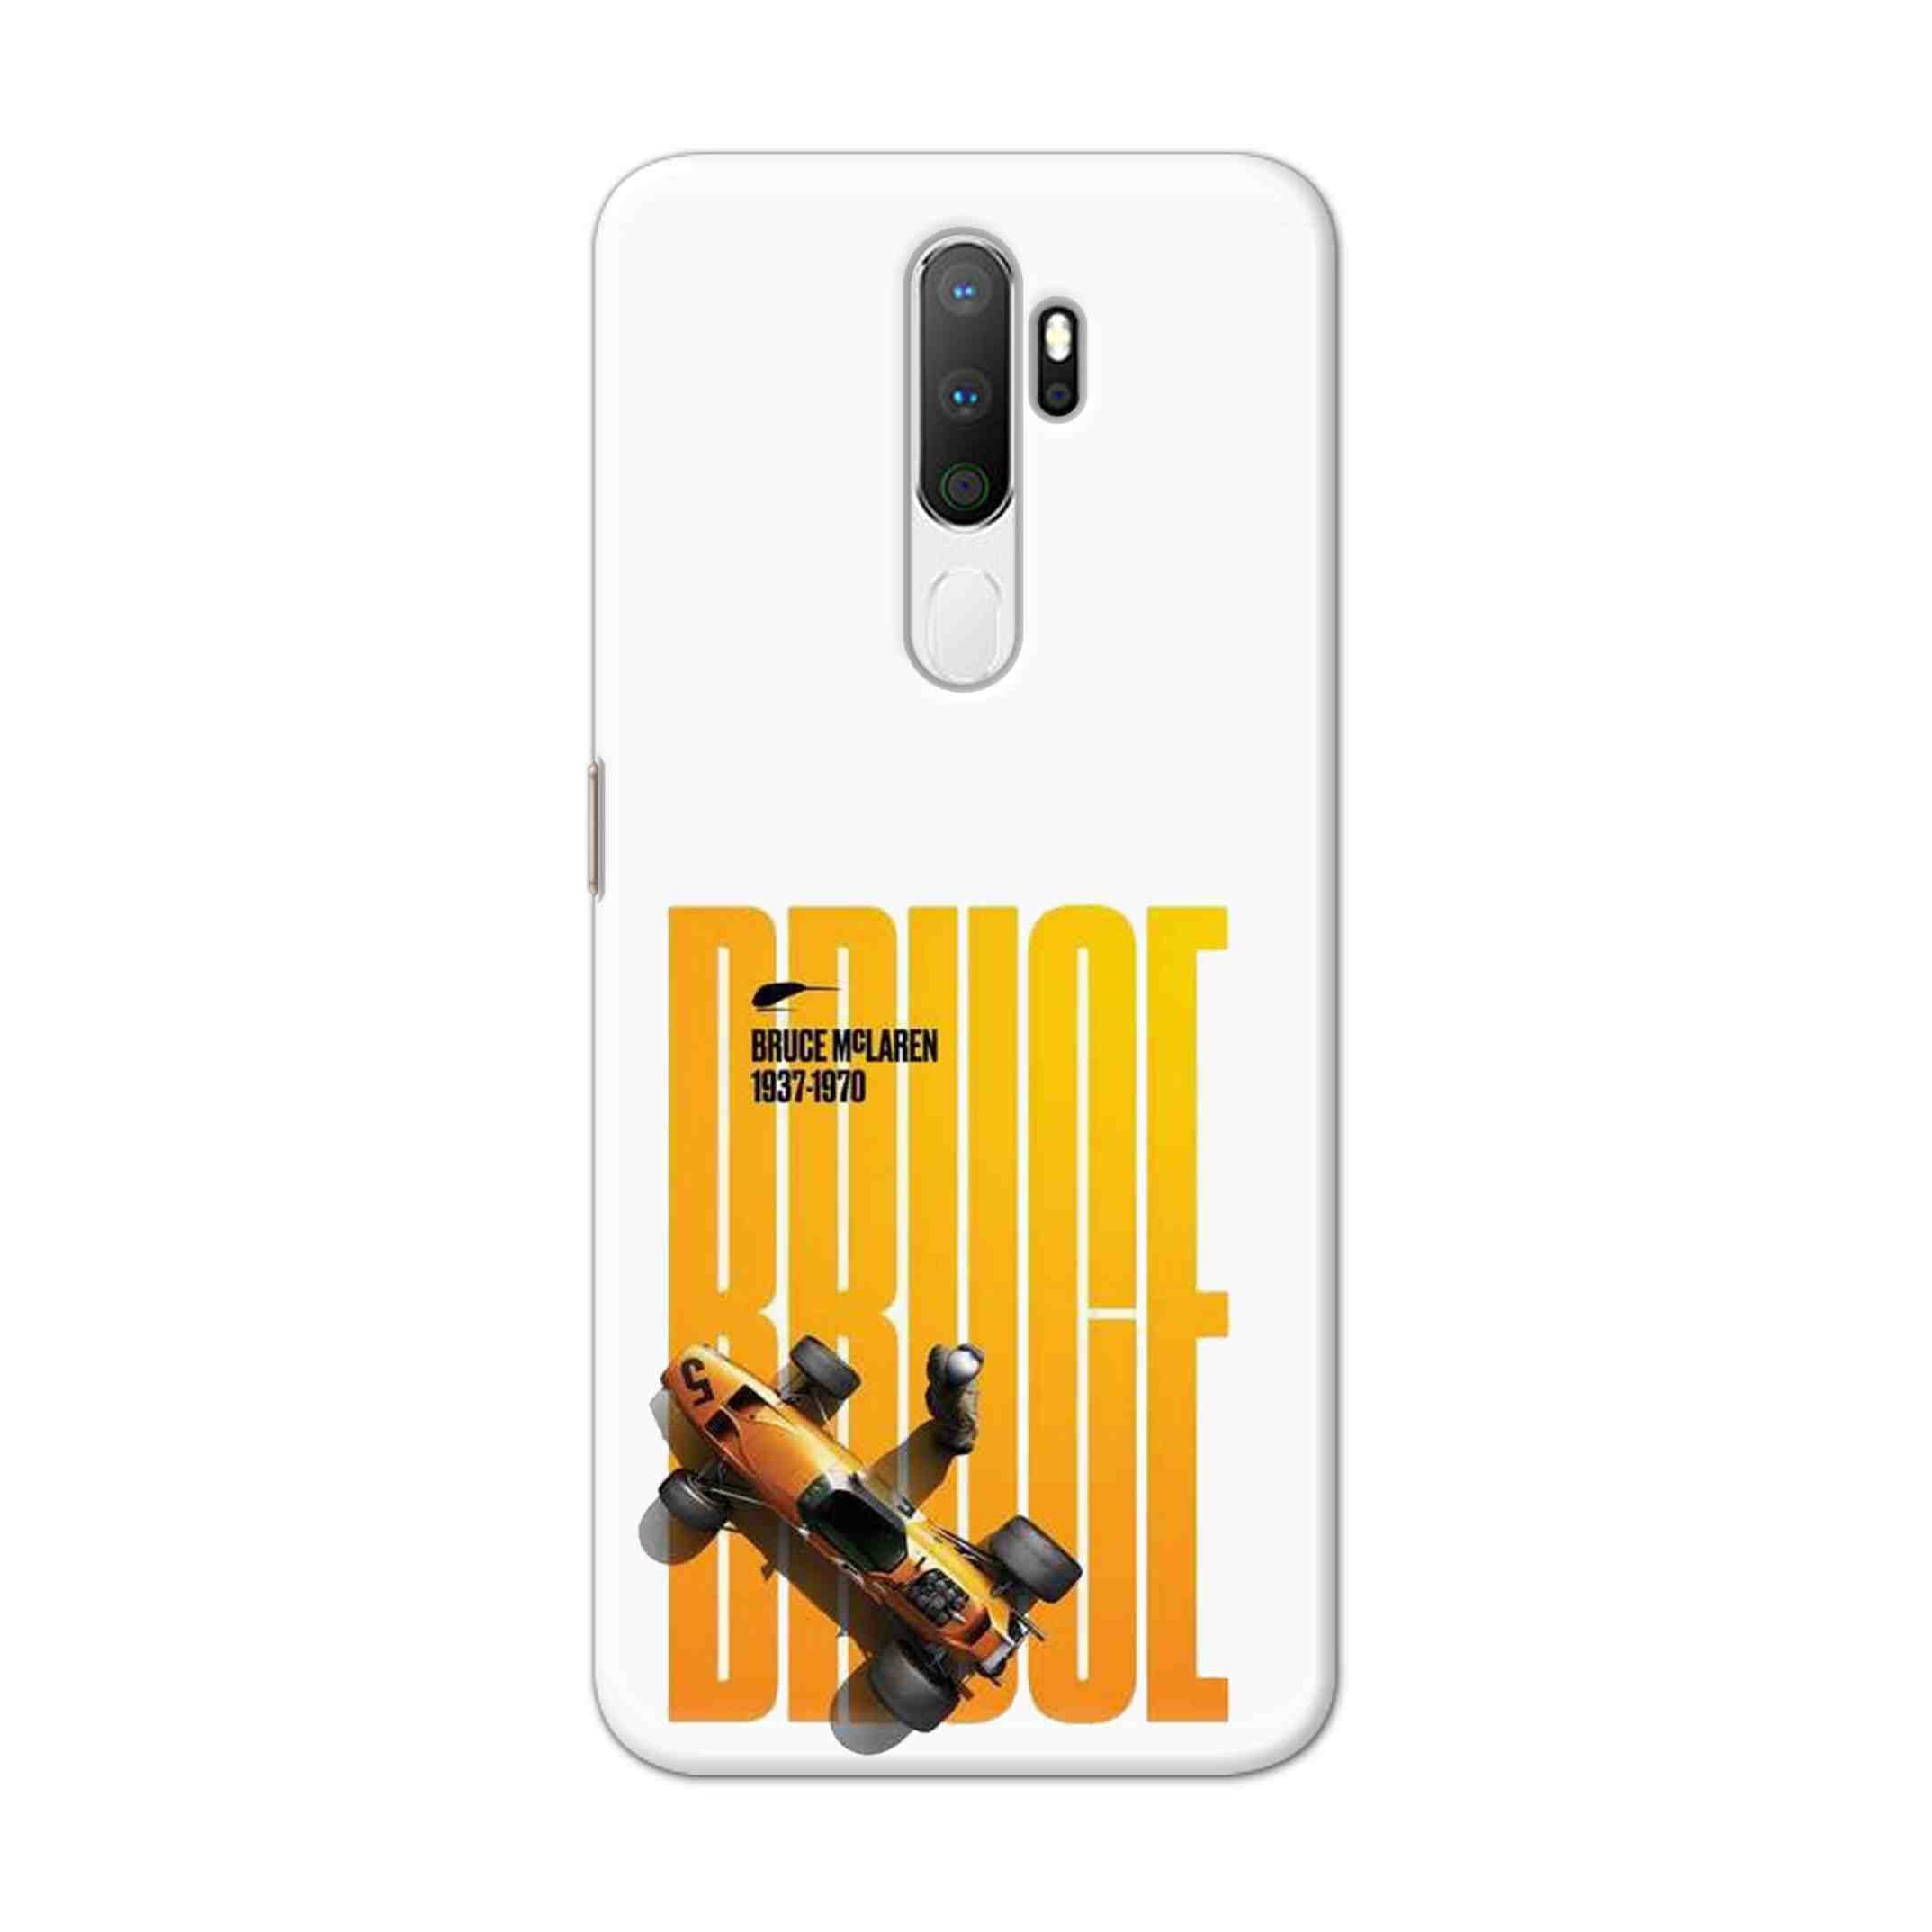 Buy Mc Laren Hard Back Mobile Phone Case Cover For Oppo A5 (2020) Online